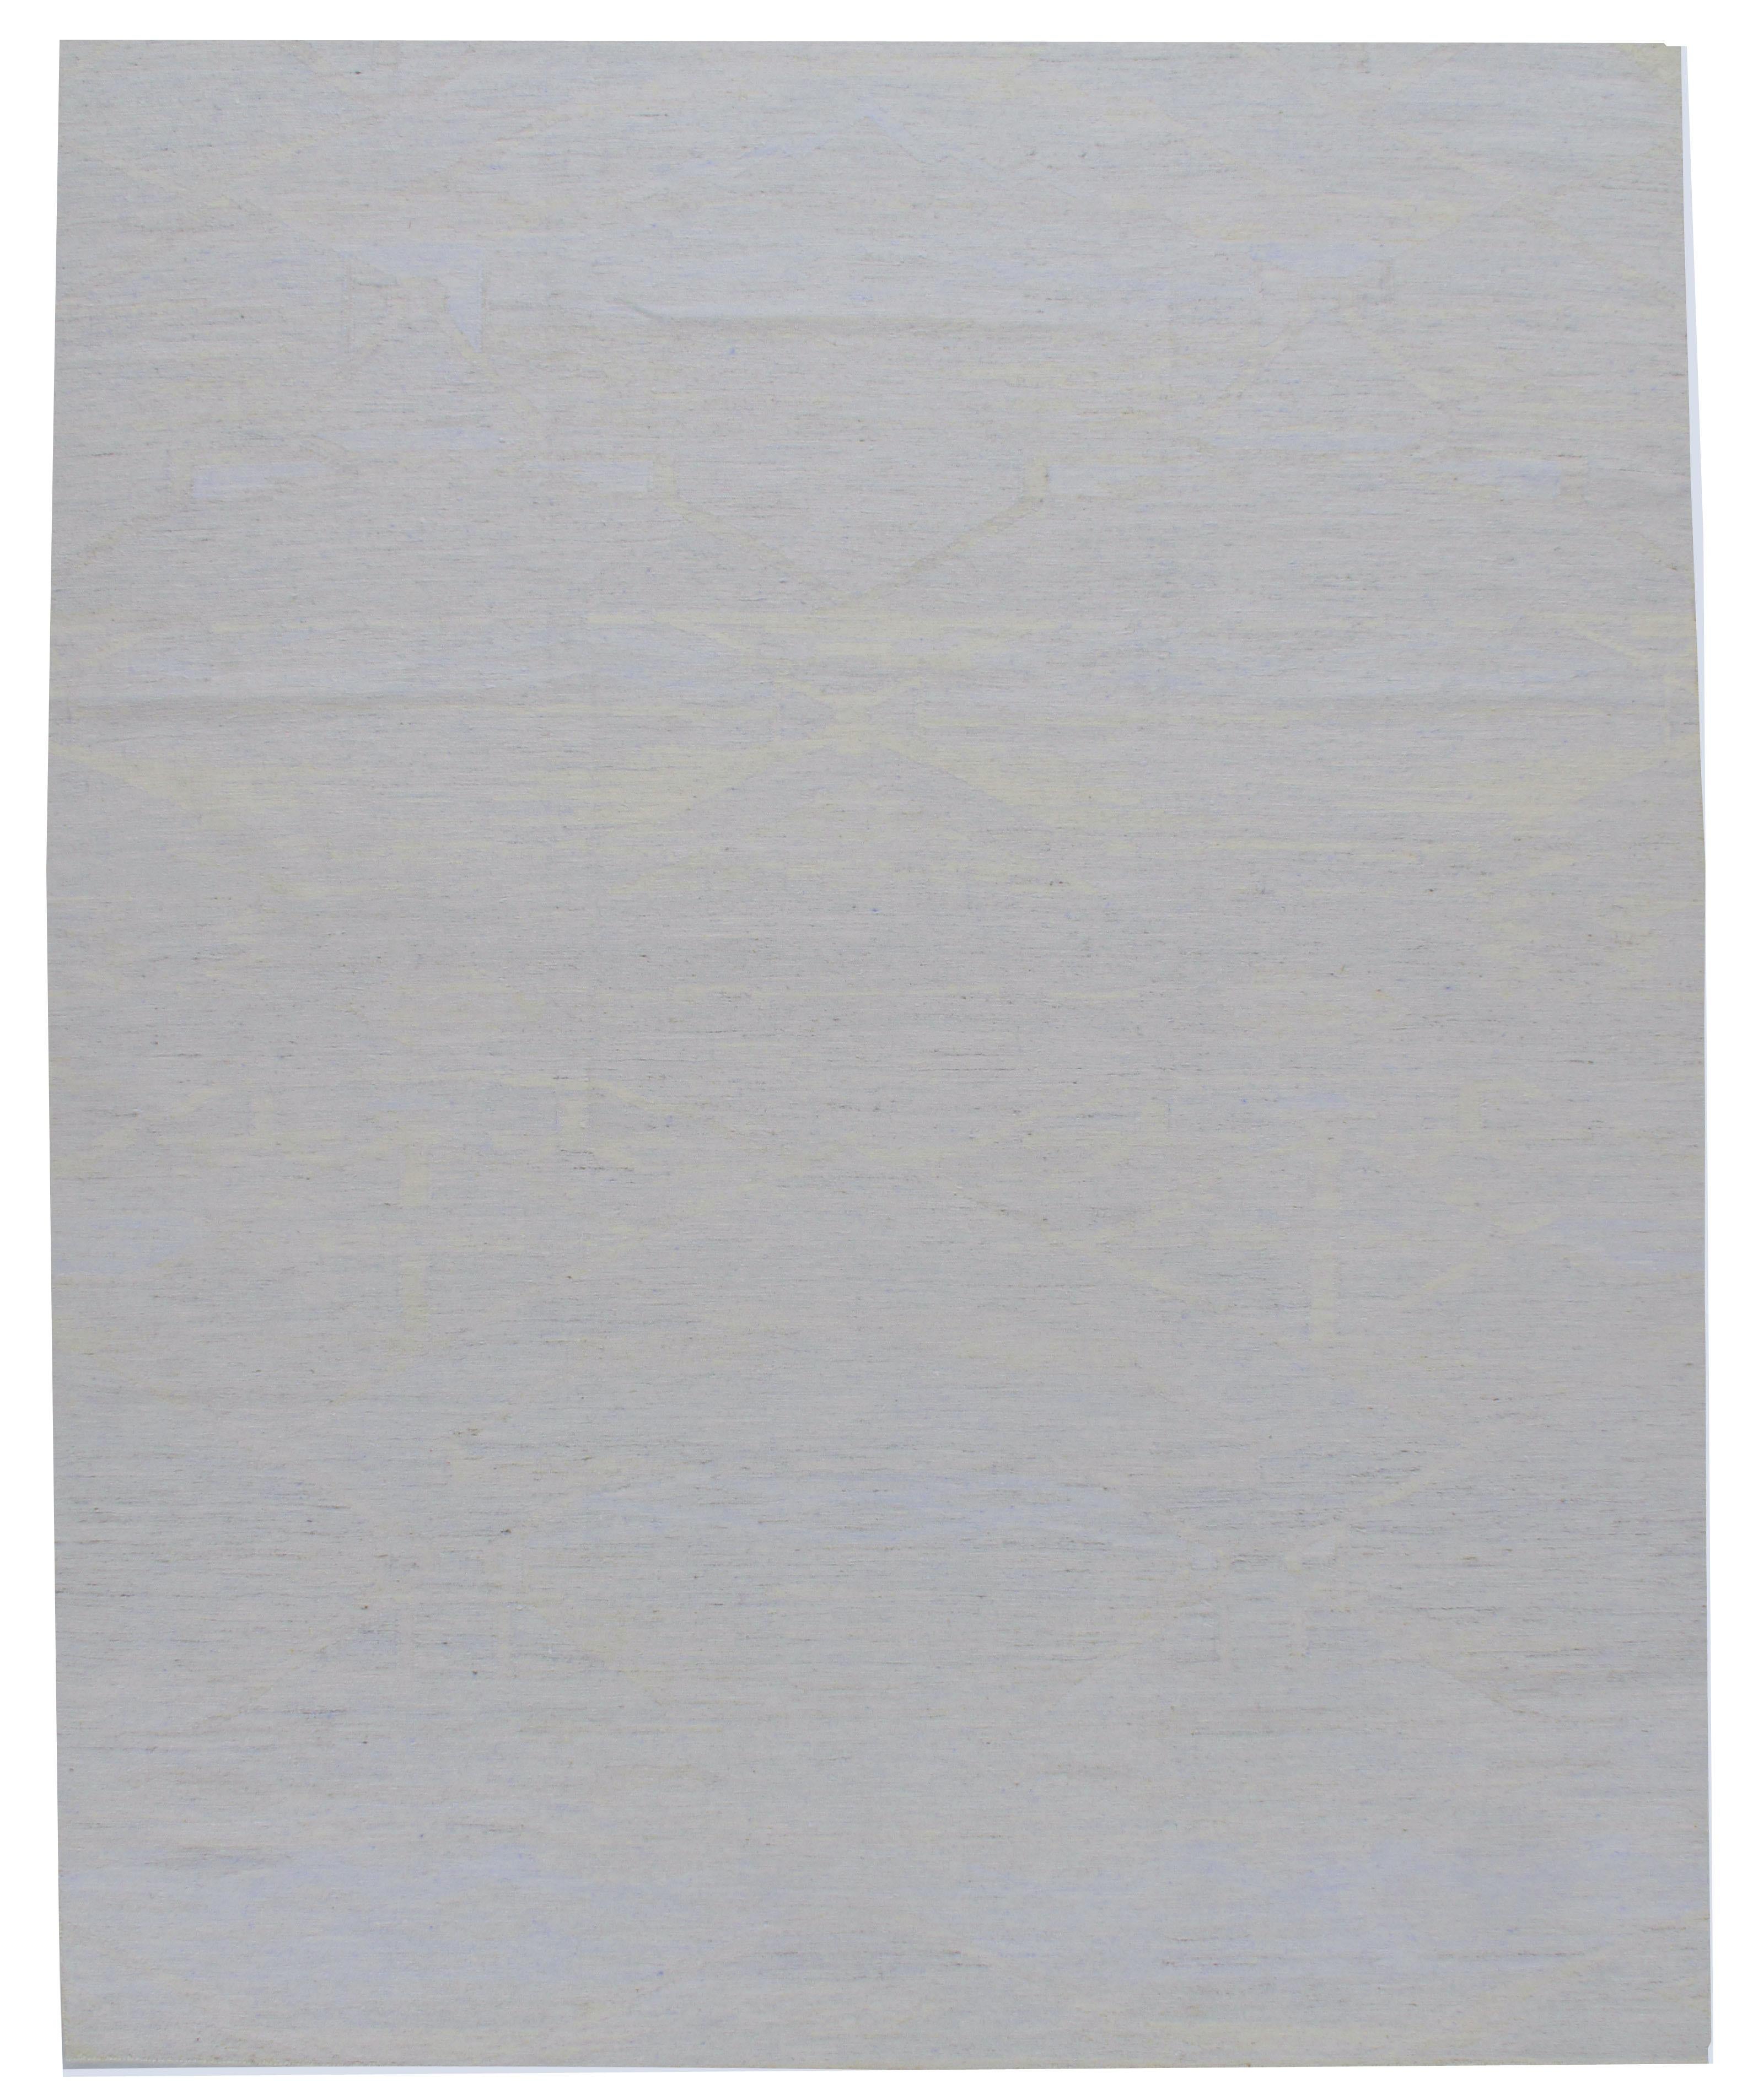 Tapis déco scandinave de style suédois Flatweave gris bleu 10'1 x 13'6. Tissé à la main en Inde, ce Kilim en laine et viscose a été conçu sur le modèle simple et épuré des designs suédois pour créer un tapis d'une simplicité et d'une audace qui